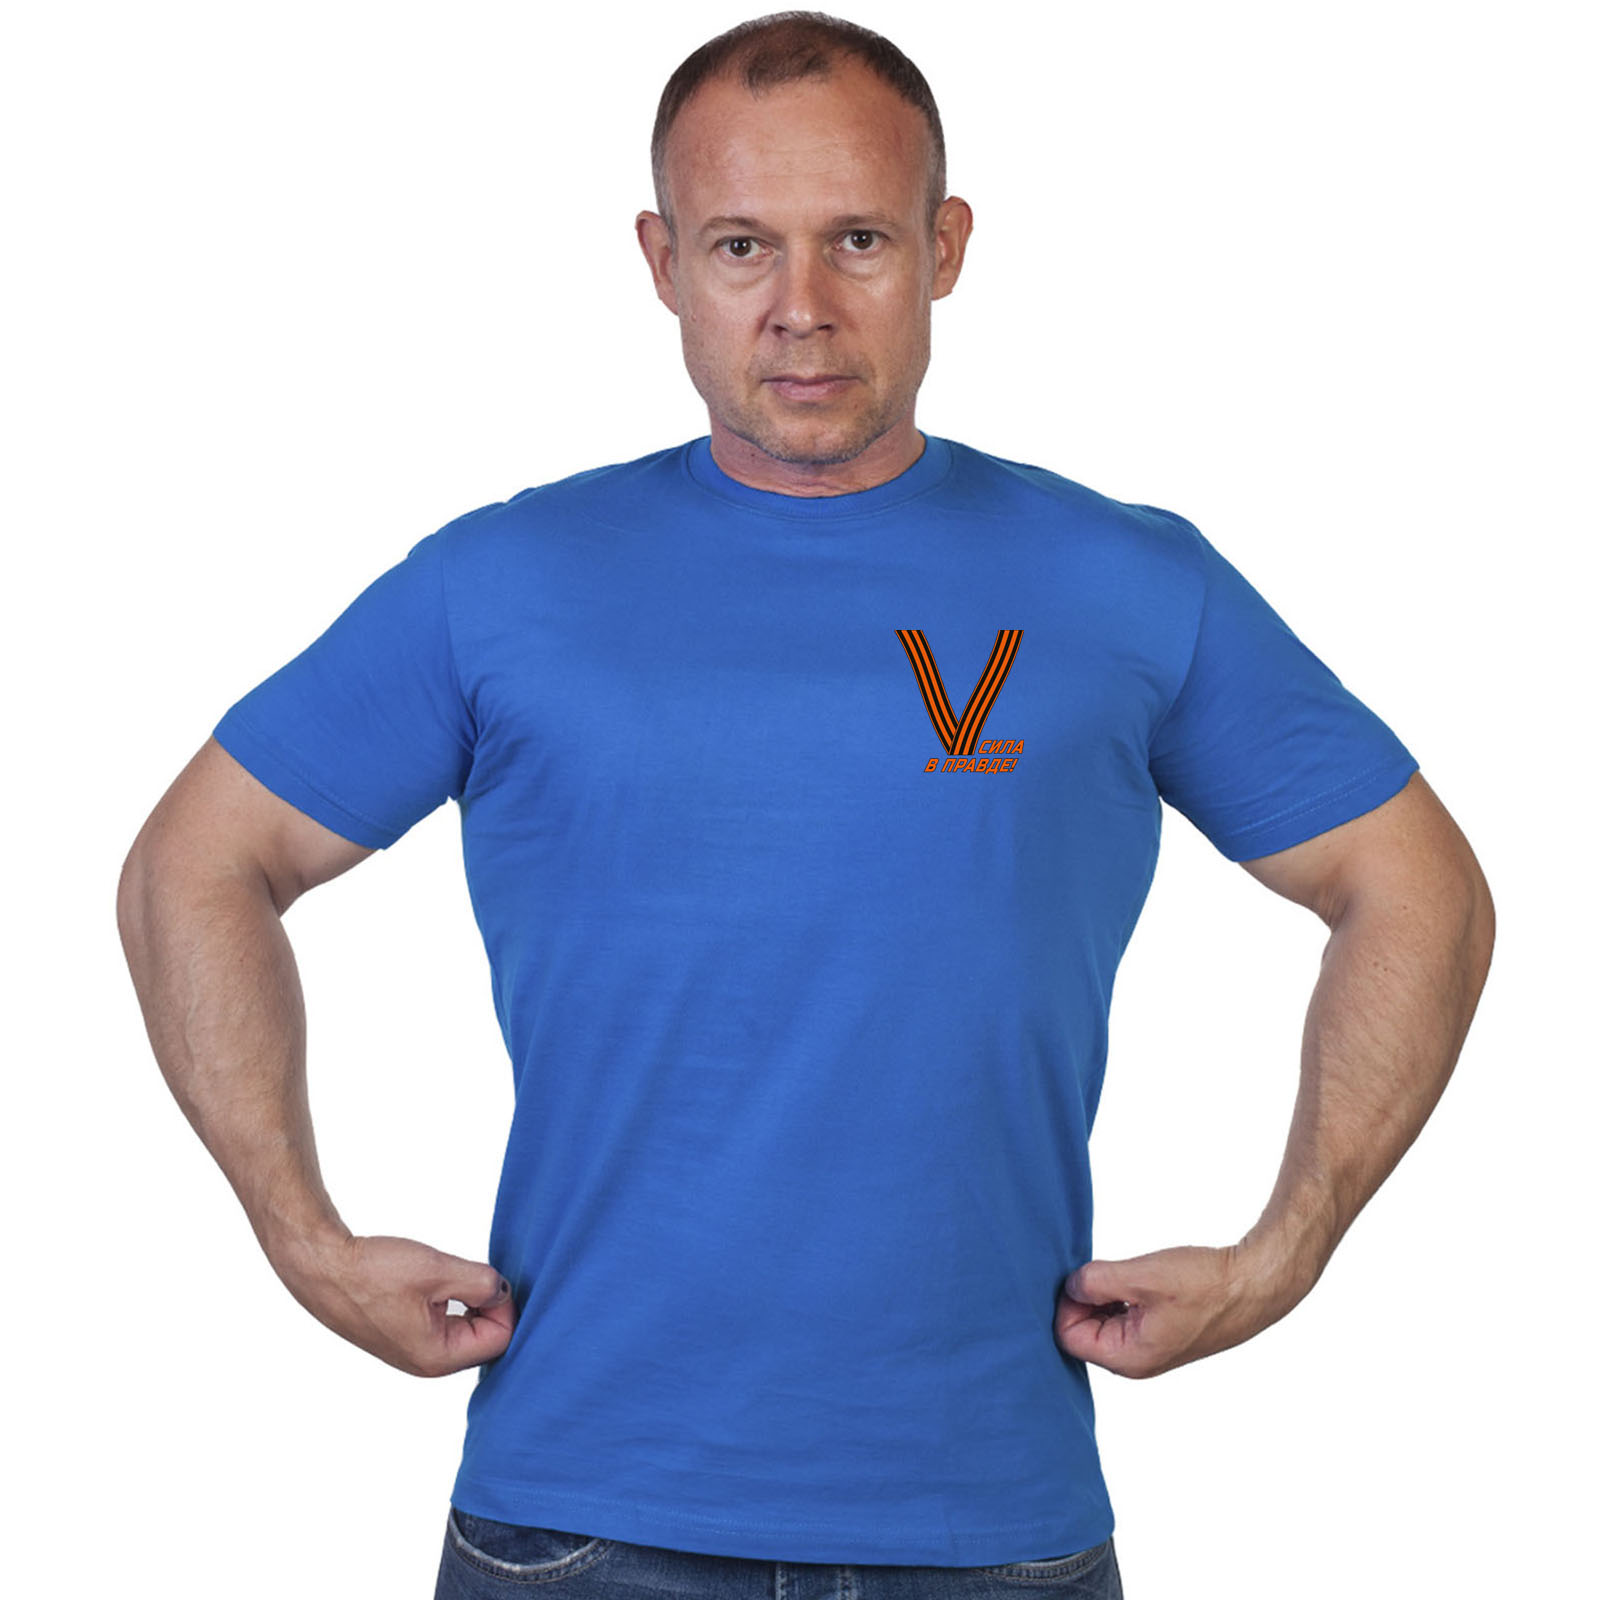 Васильковая футболка с термопереводкой «V»